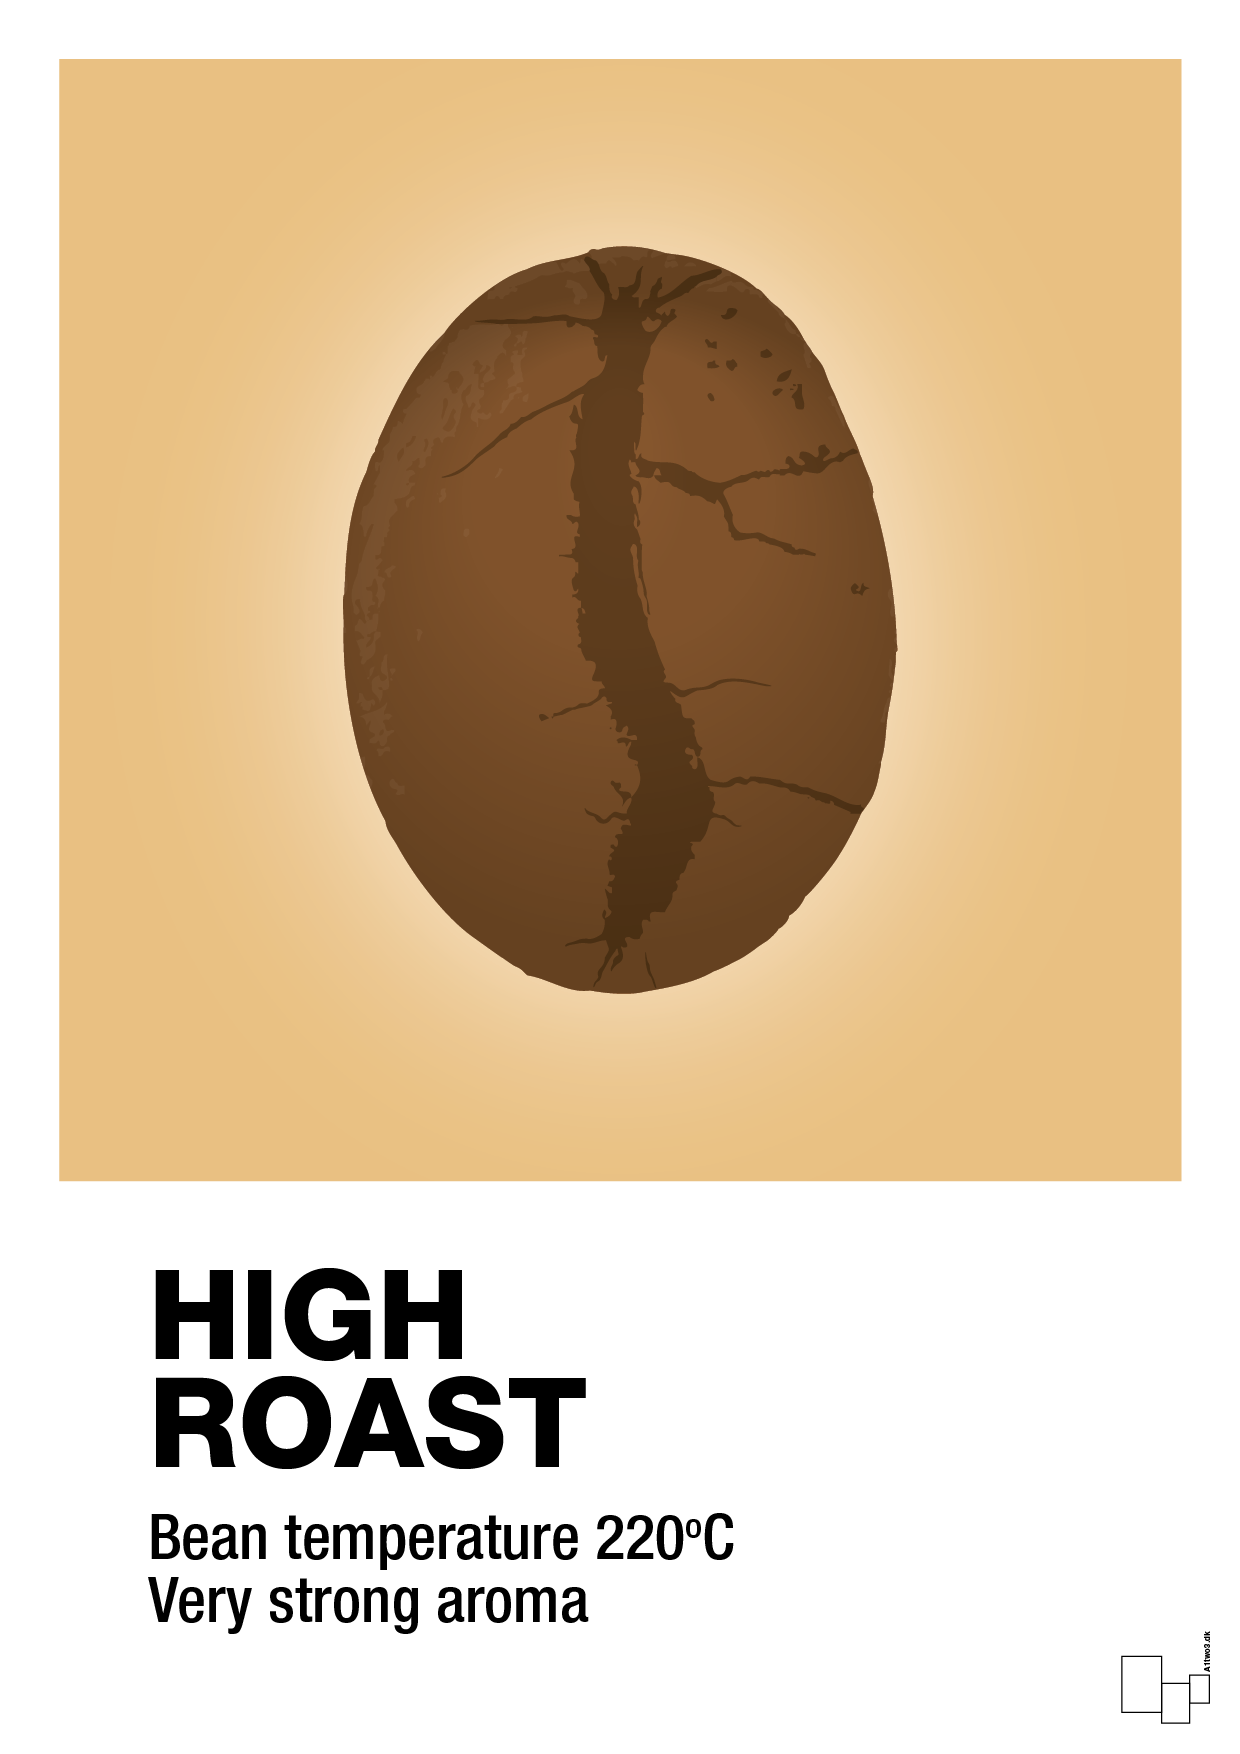 high roast - Plakat med Mad & Drikke i Charismatic